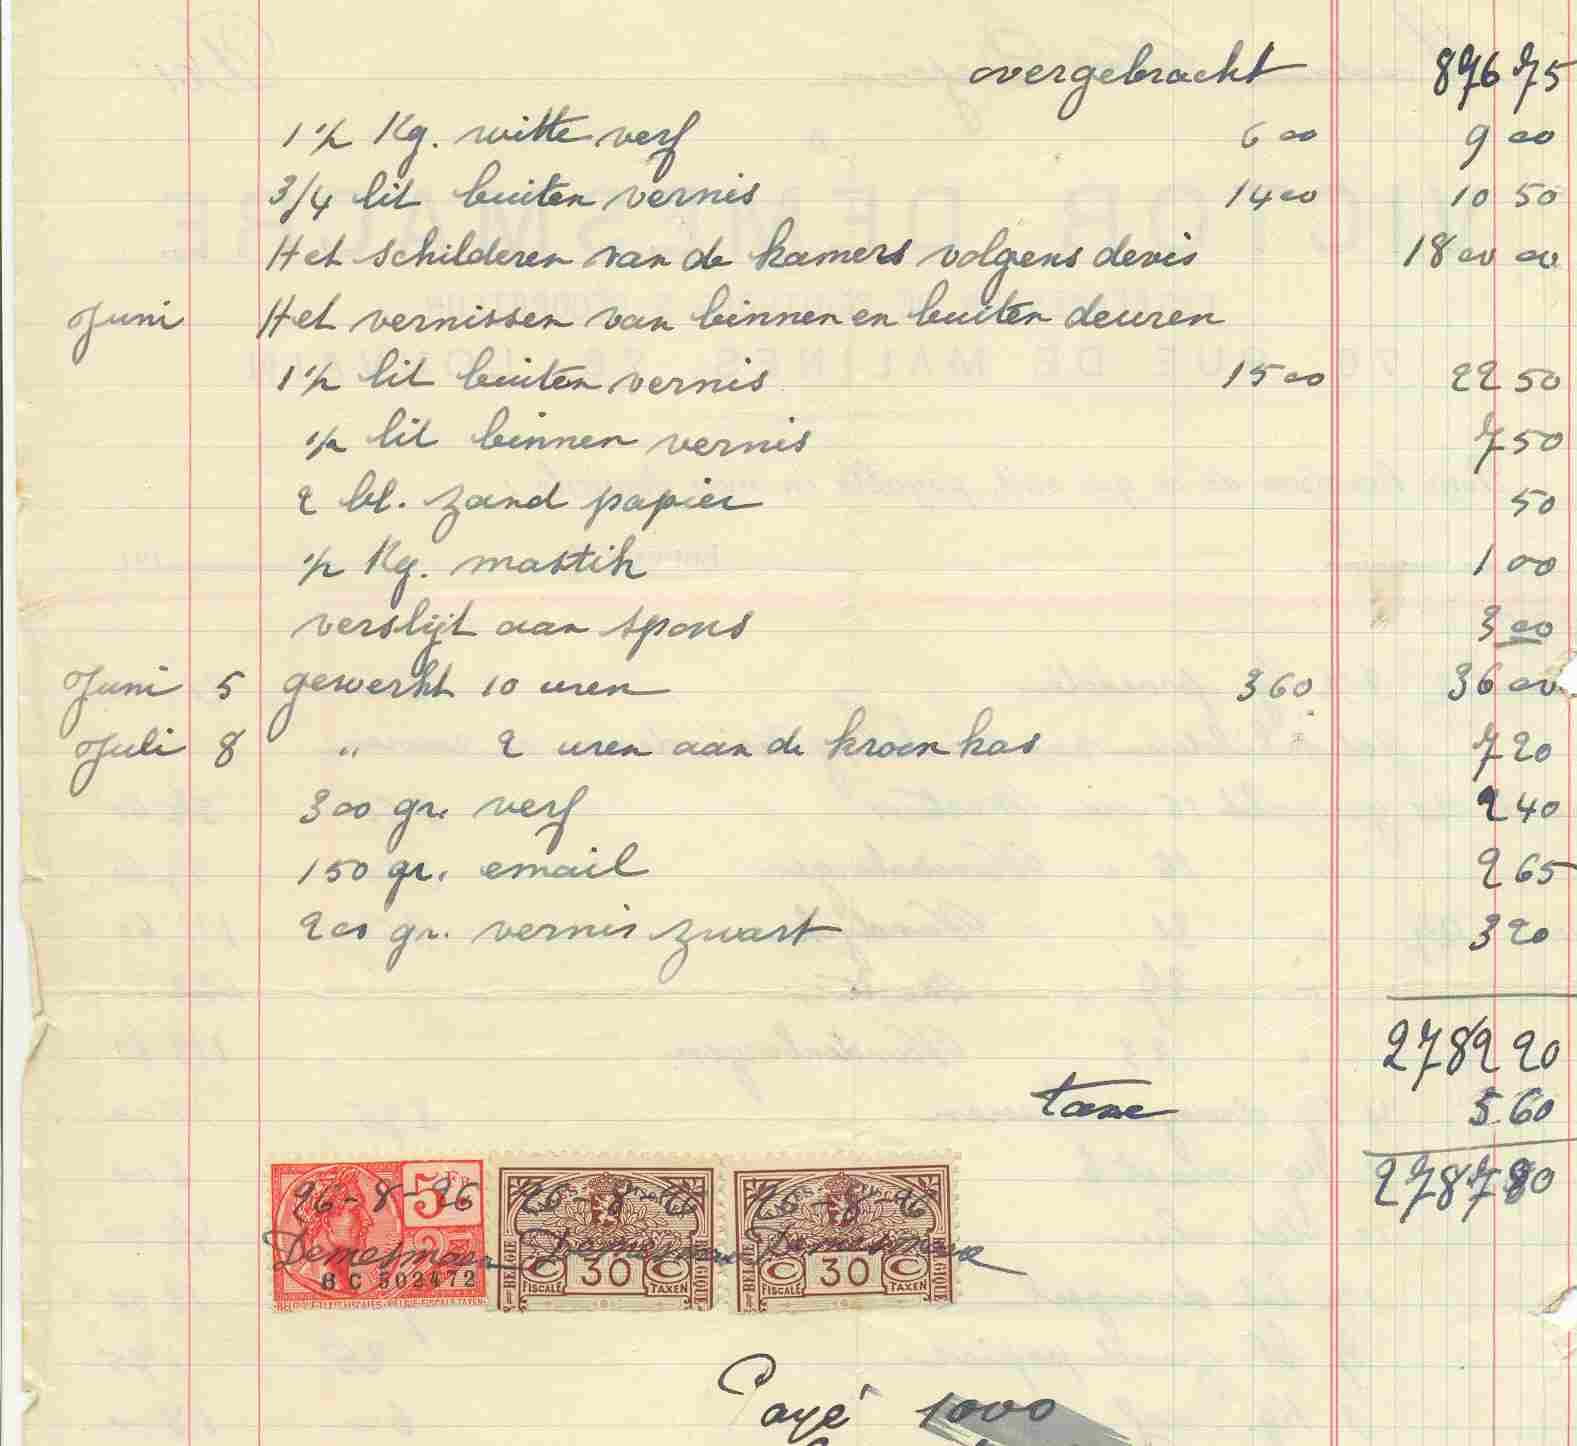 Fiscale  Zegels Op Document , 1927 , Zie Scans Voor Schade, (2de Scan Zijn Zegels Van Document) - Documents